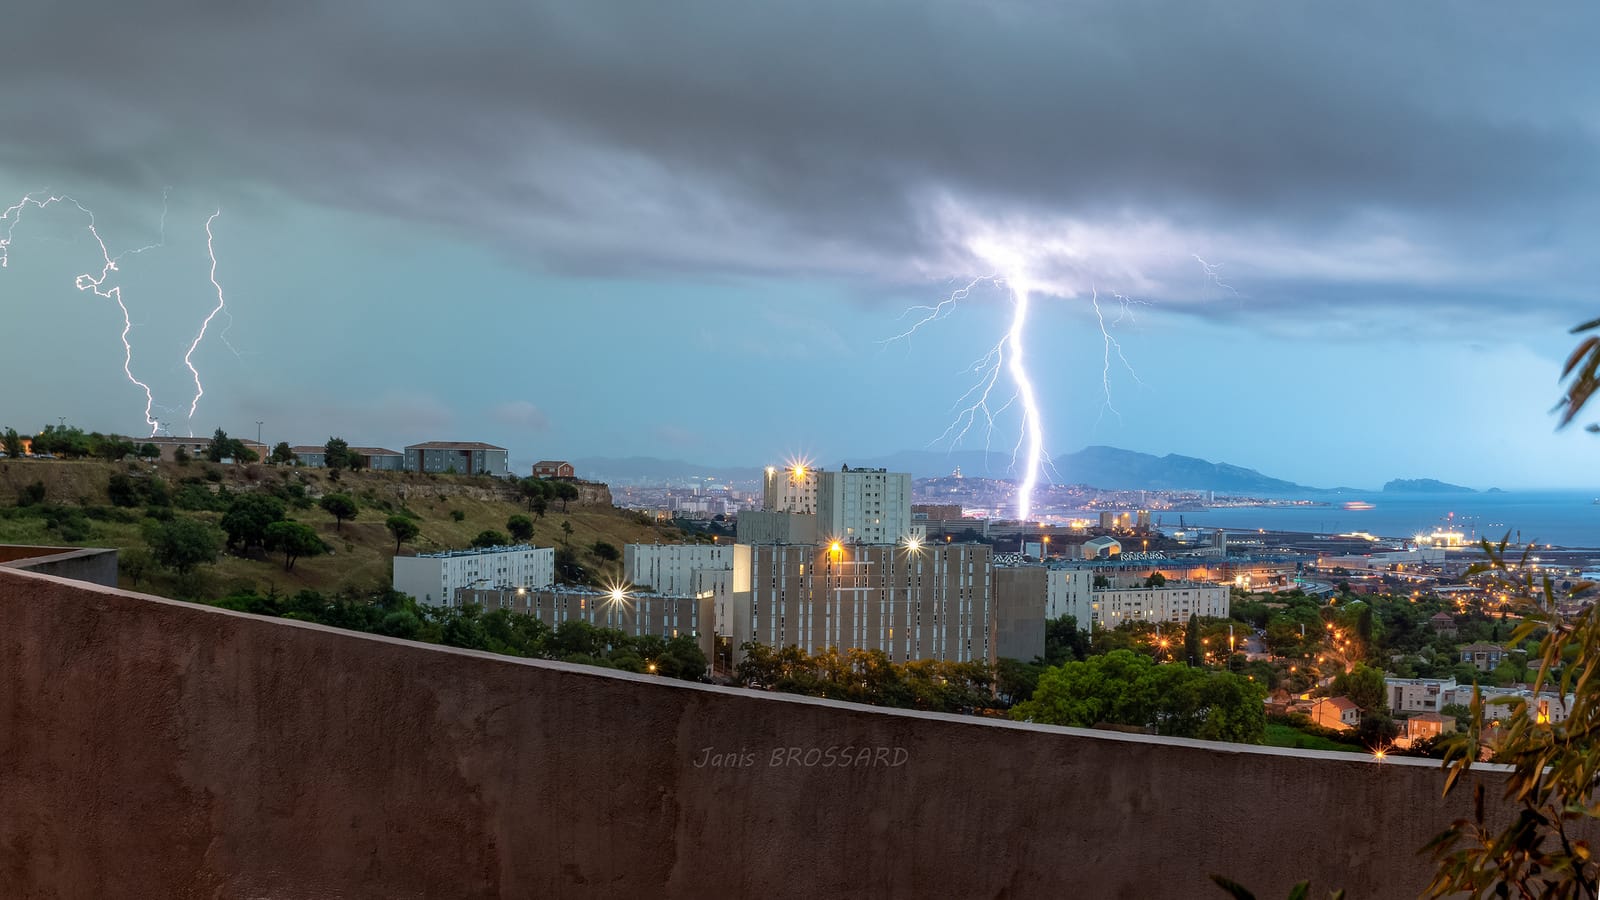 13 août 2018 ,2ieme vague orageuse du mois , photo prise depuis la banlieue de Marseille montrant ainsi la Bonne mère et la Canebière sous un autre angle avec un impact extra-nuageux ! .. j'ai comme l'impression de vivre un automne indien dans le sud est - 13/08/2018 07:16 - janis Brossard